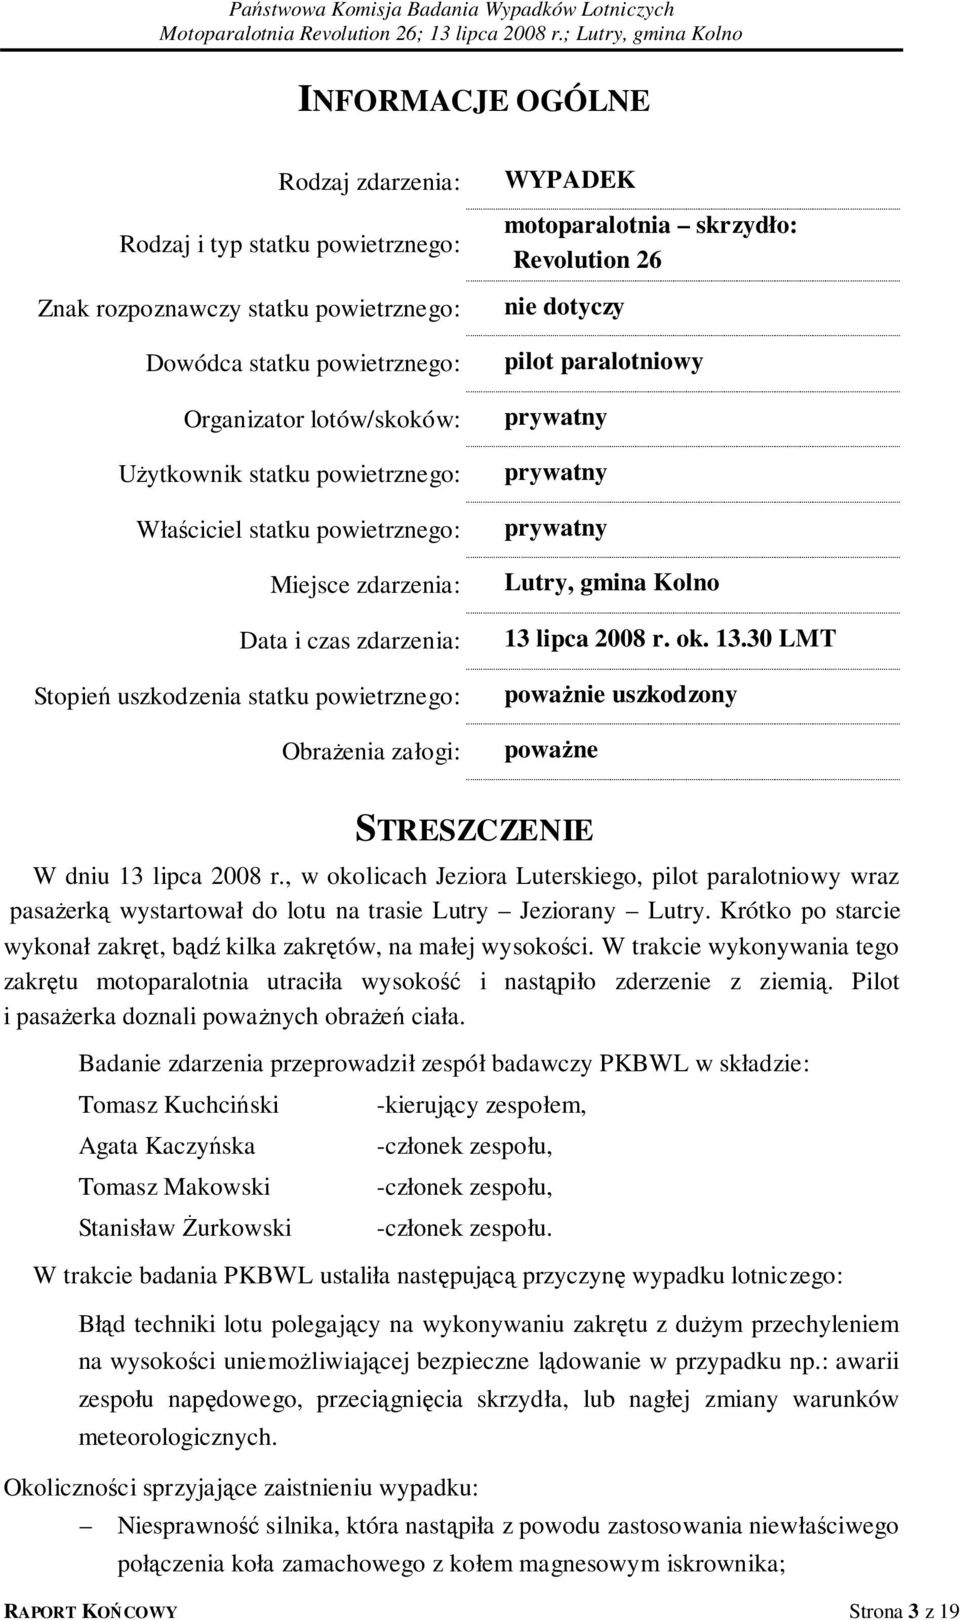 paralotniowy prywatny prywatny prywatny Lutry, gmina Kolno 13 lipca 2008 r. ok. 13.30 LMT poważnie uszkodzony poważne STRESZCZENIE W dniu 13 lipca 2008 r.